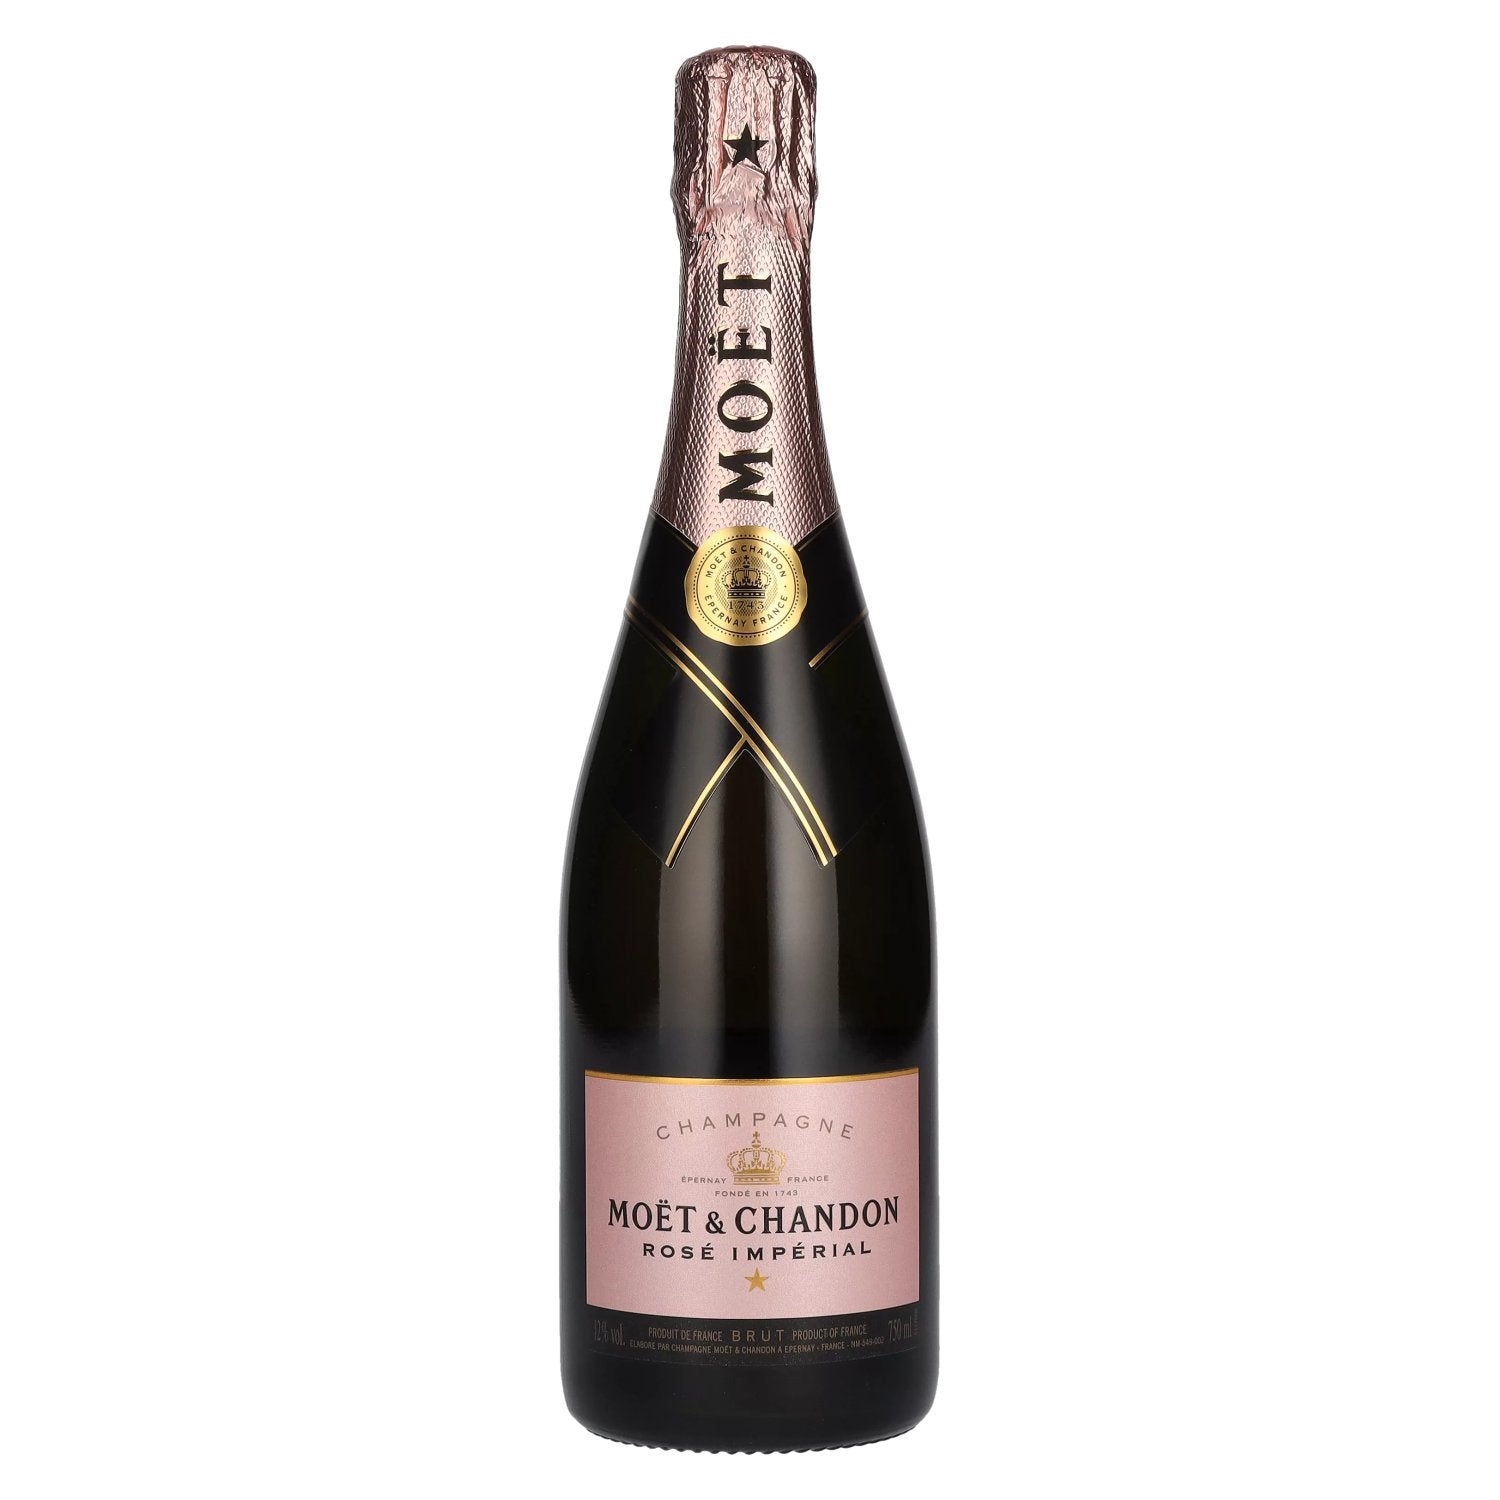 Moet & Chandon Champagne ROSE IMPERIAL Brut 12% Vol. 0,75l